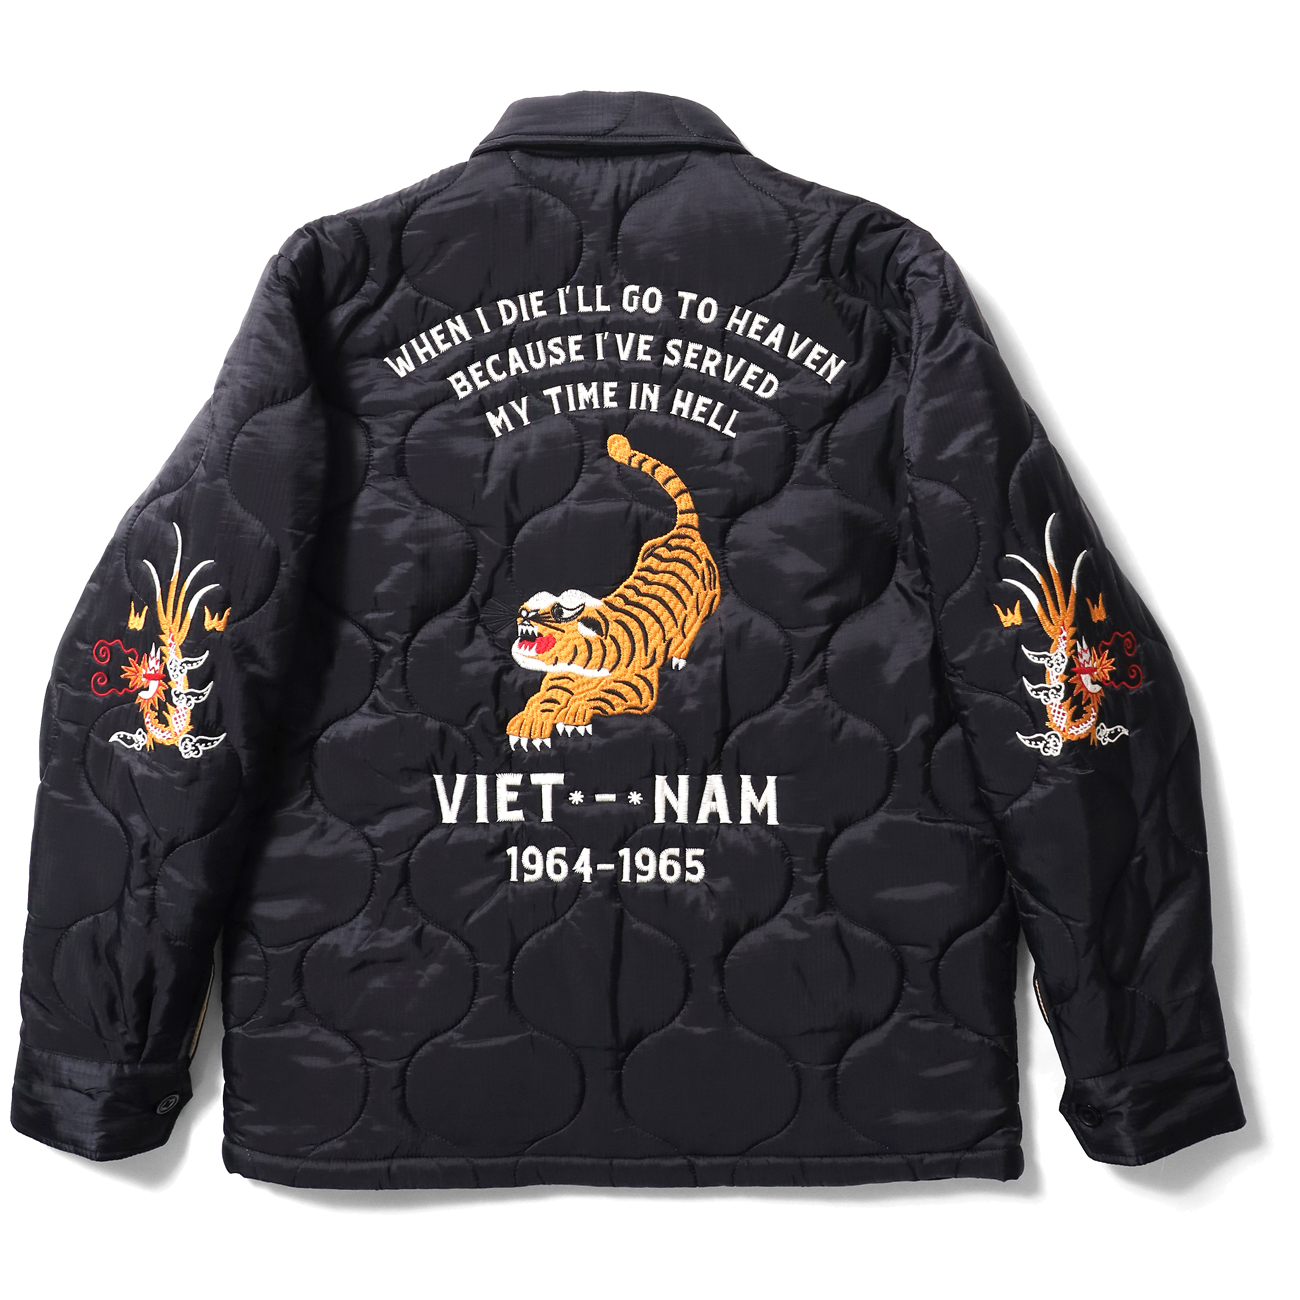 コットン製も良いけれど、キルティング製の『ベトナムジャケット』も